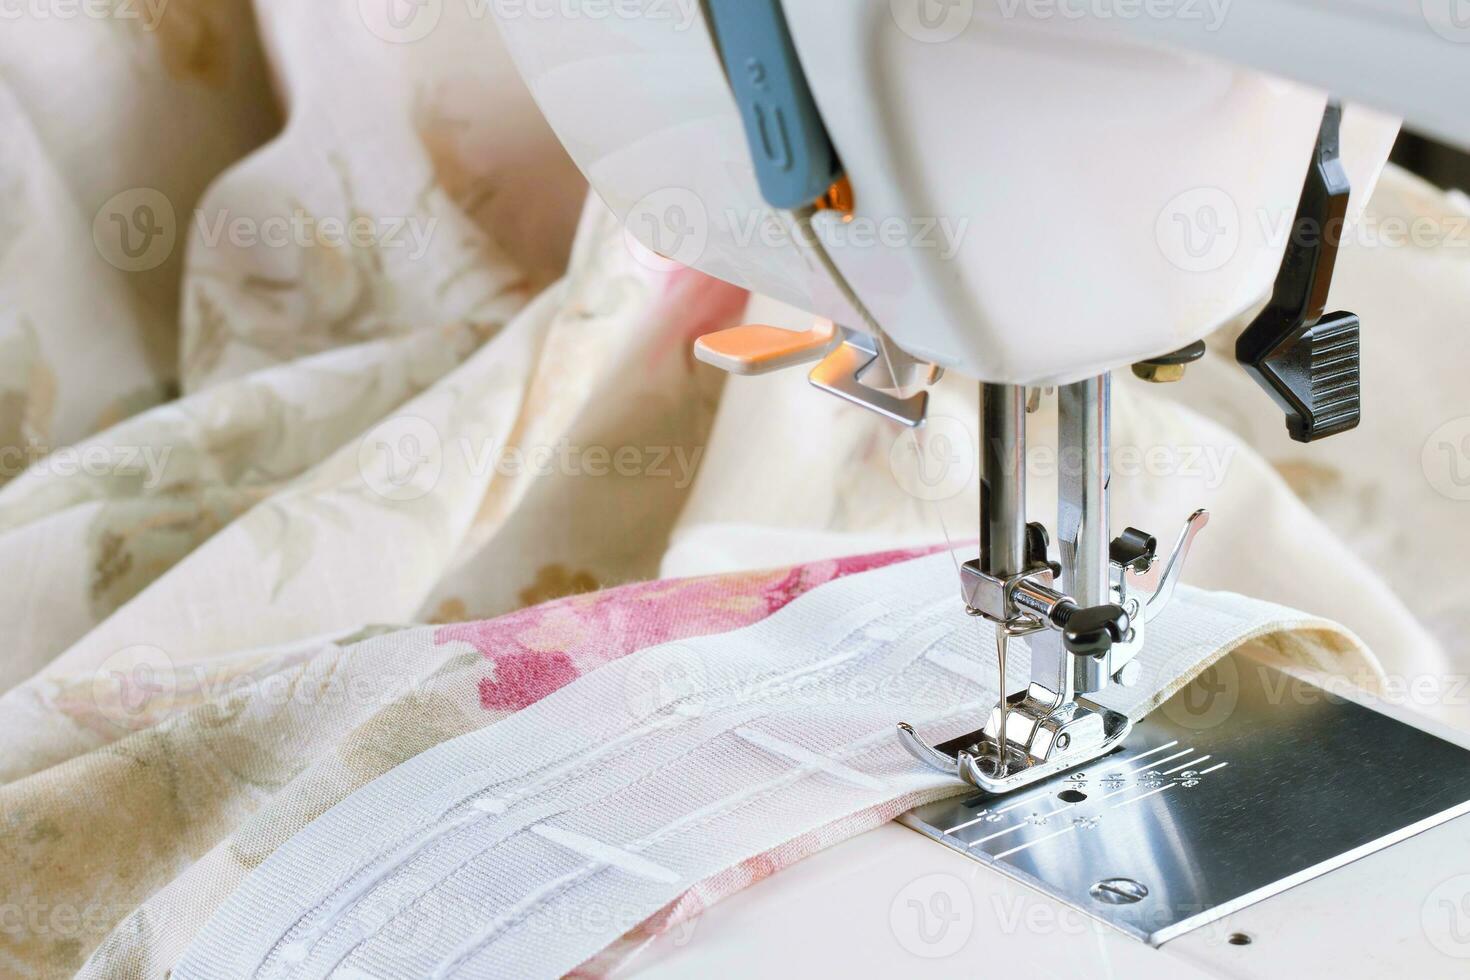 moderno cucire macchina, cucire processi foto